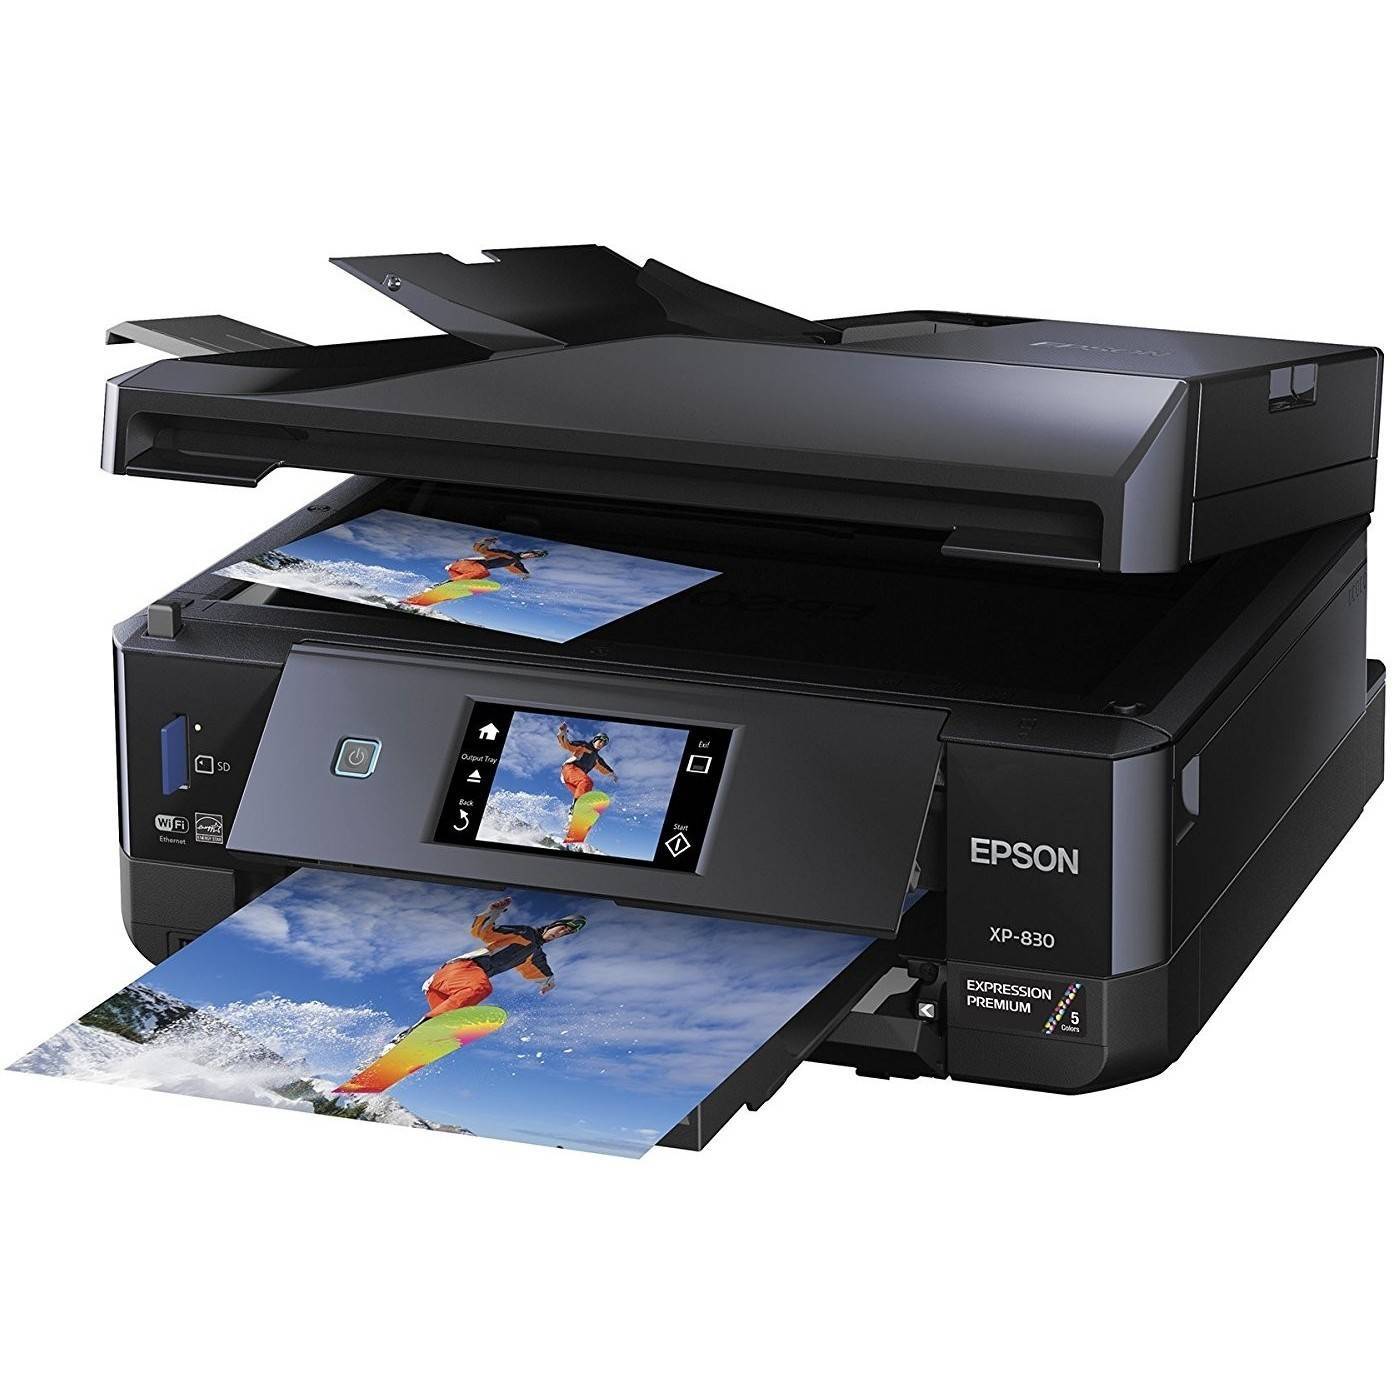 Какой принтер лучше для печати фотографий: струйный или лазерный